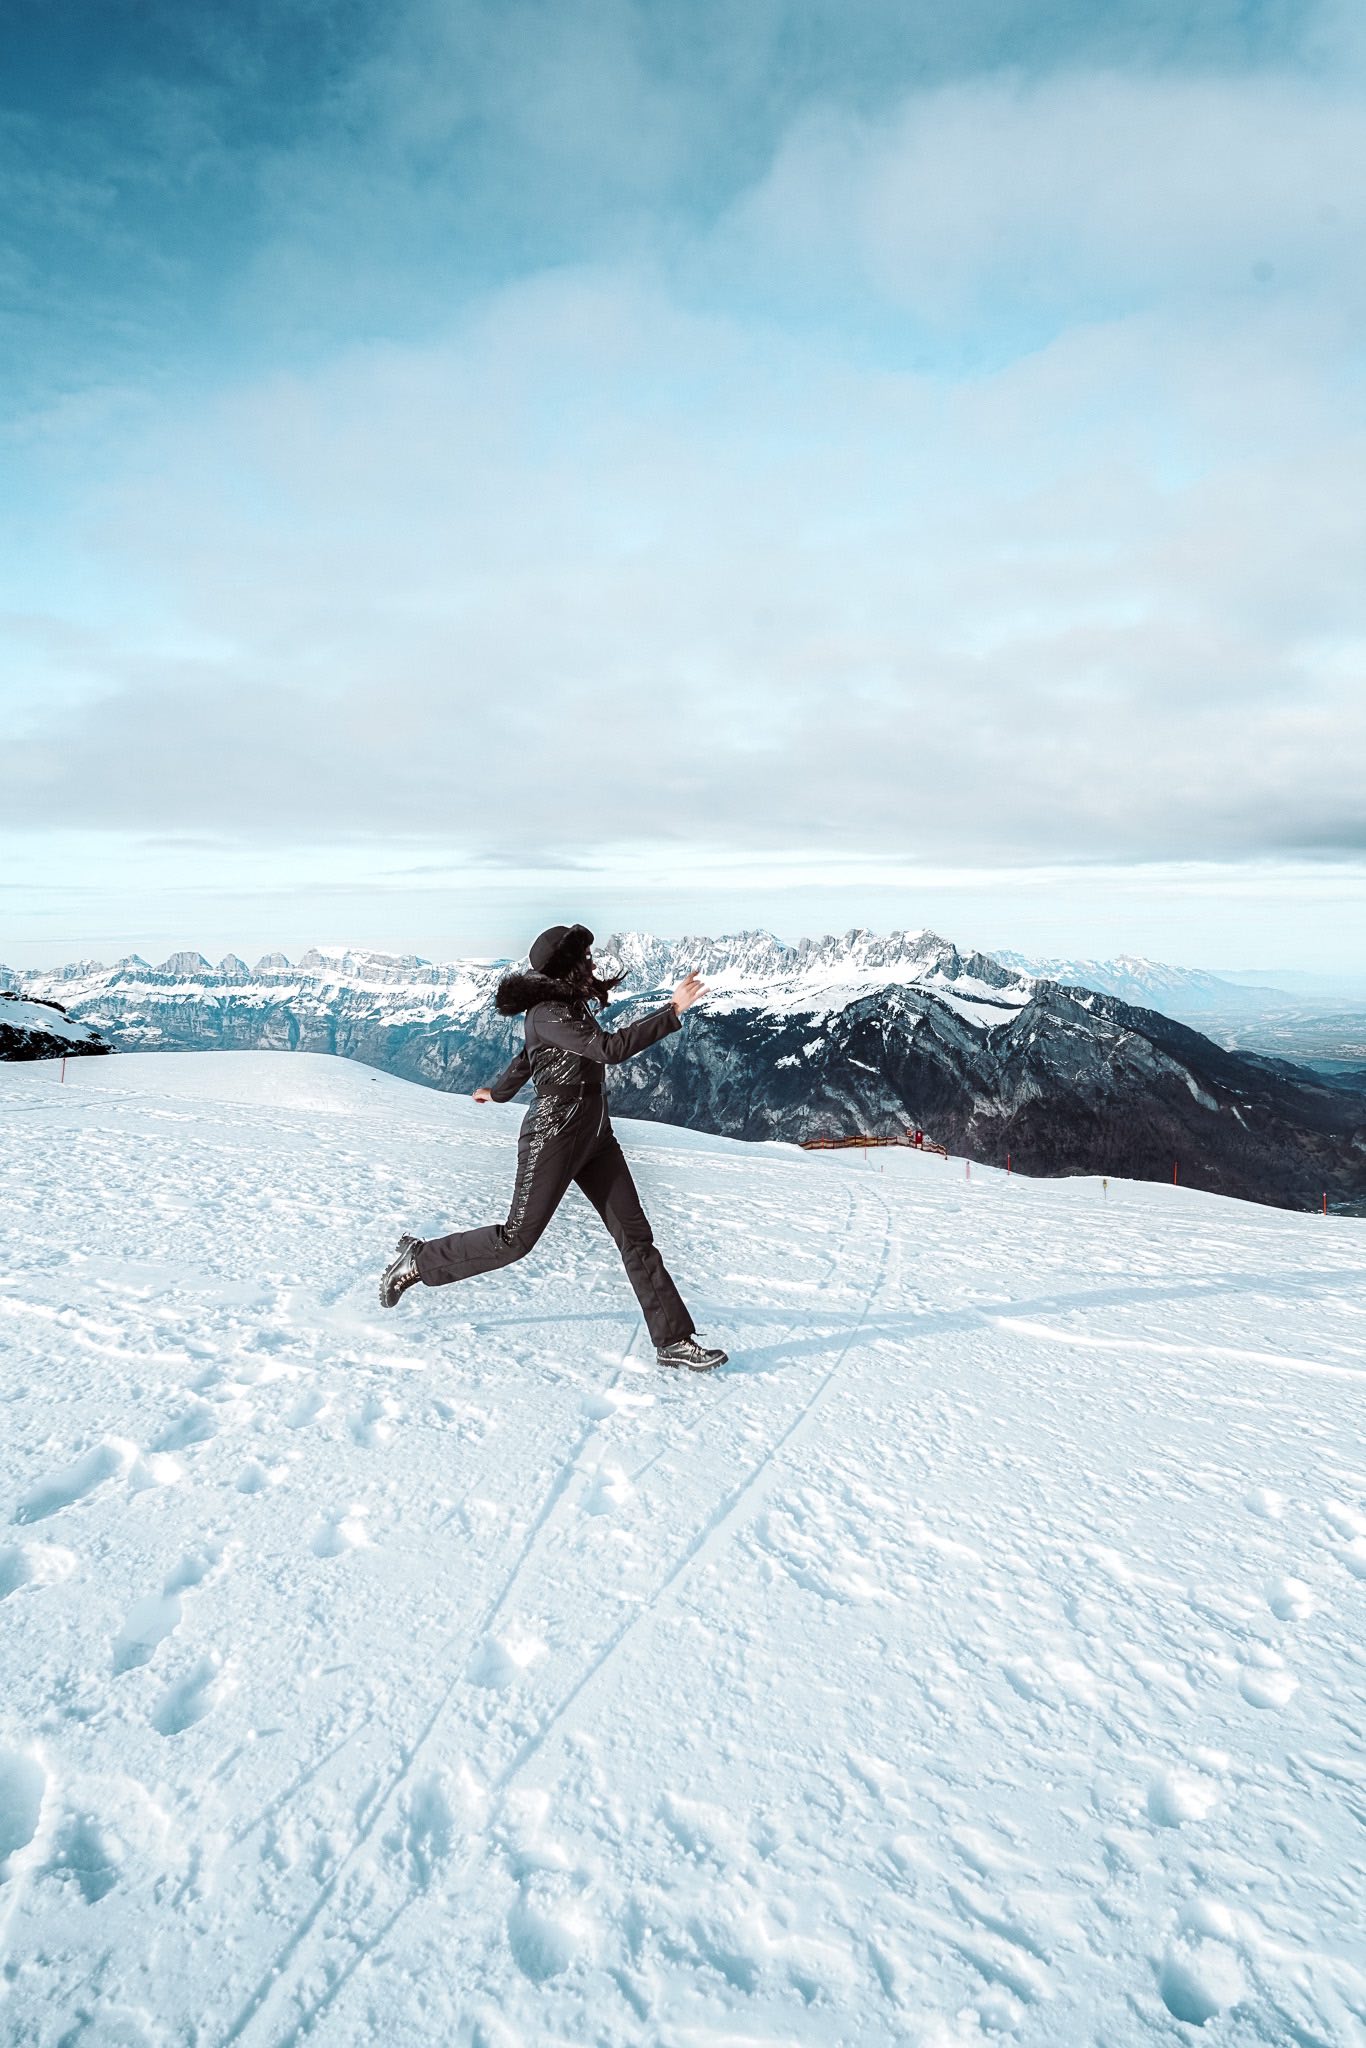 Prada Ski Wear Photo Shoot in the Alps